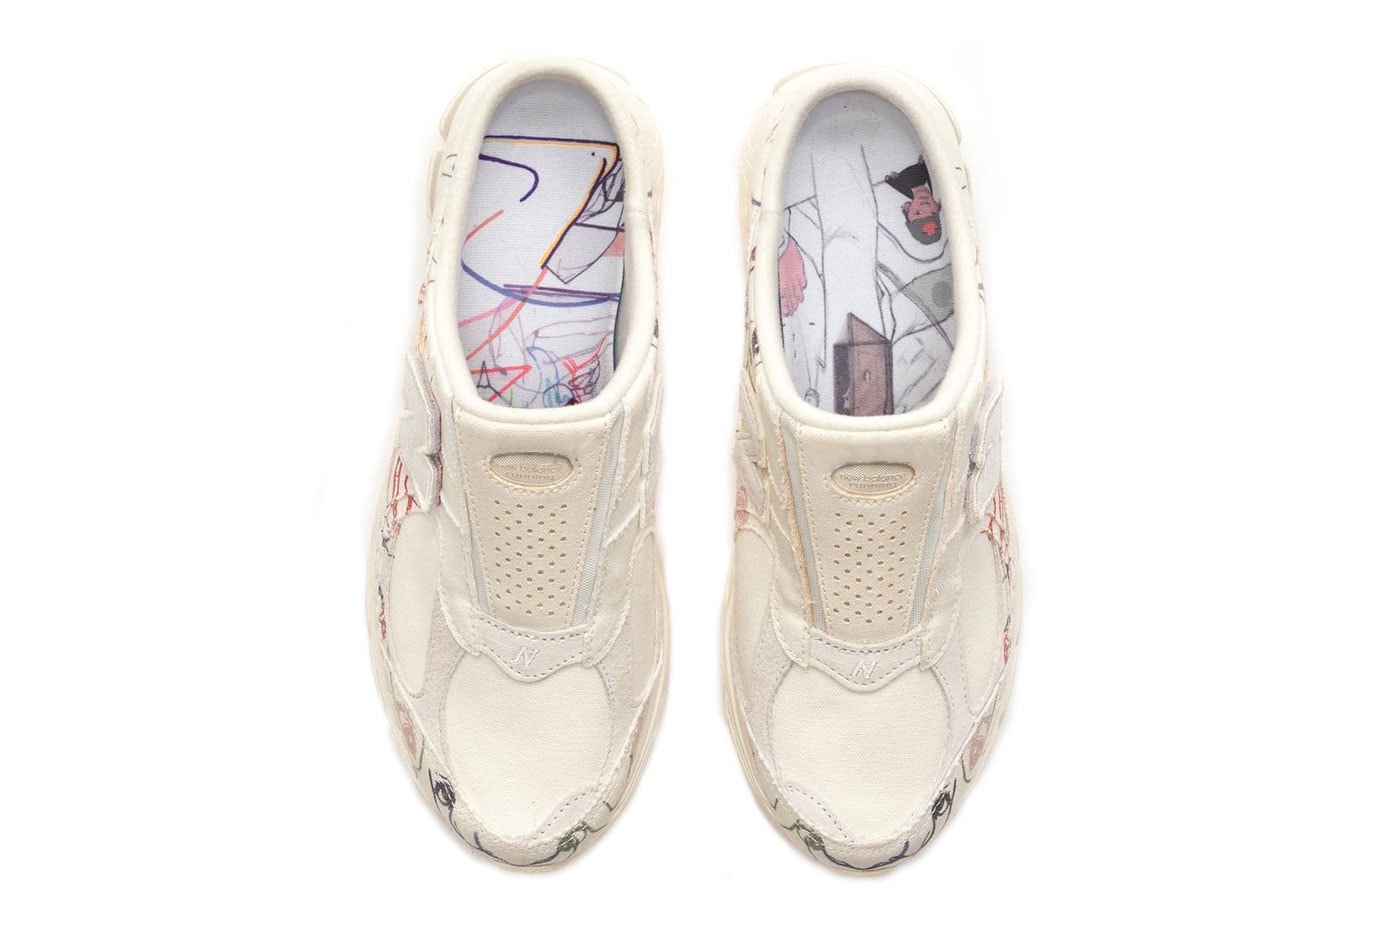 ニューバランスからLA 在住のアーティスト ブライアント・ジャイルスとの初コラボ 2002R が発売 Bryant Giles for New Balance 2002R / 2002R Mule “the Artist’s shoe” release info